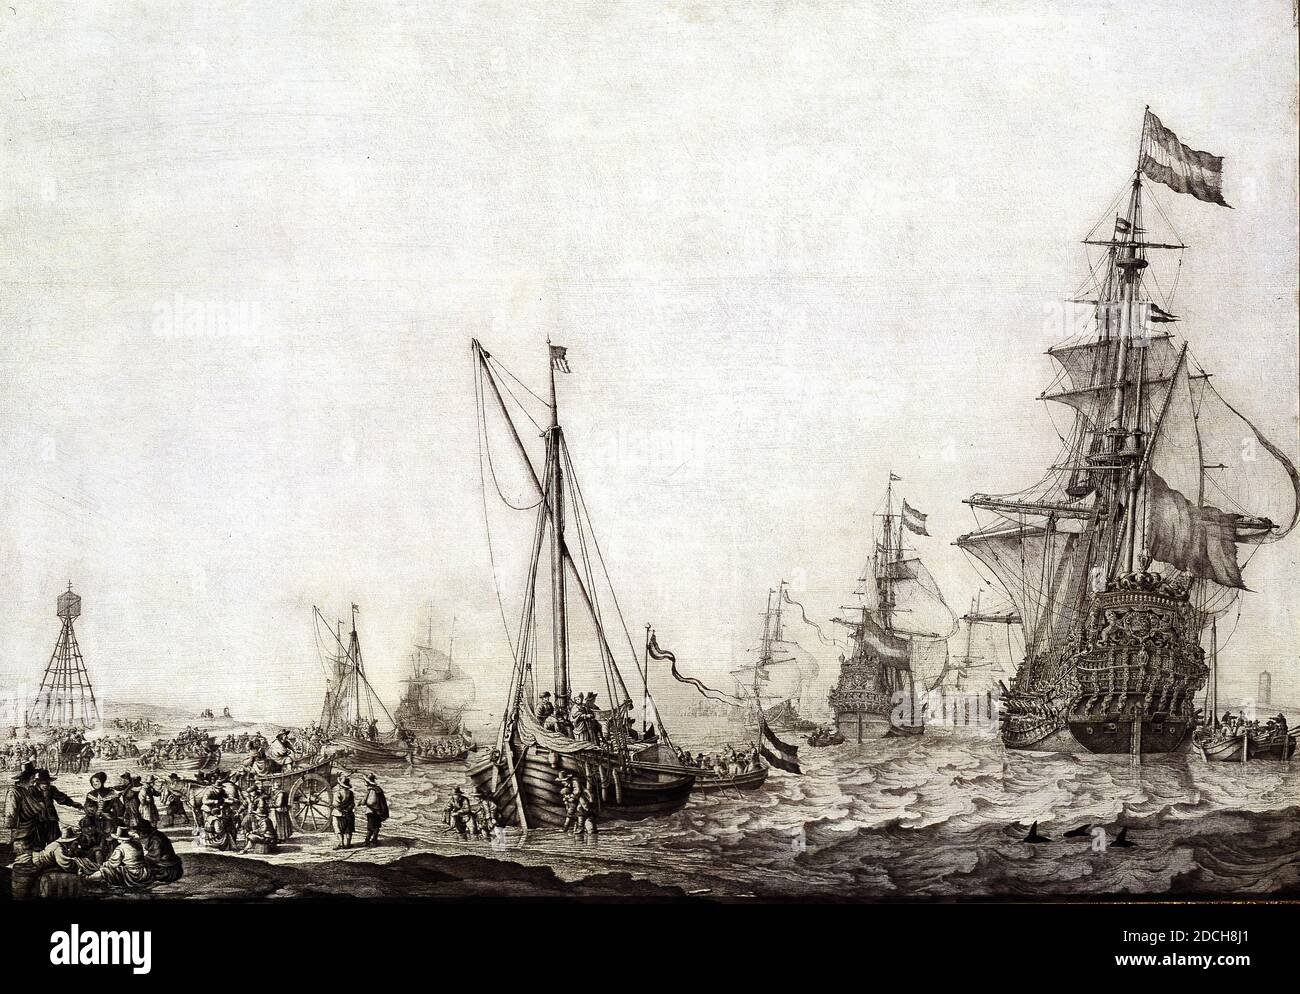 Départ de la flotte néerlandaise le 9 juin 1645, tirage au sort, Willem van de Velde The Elder, c. 1650, Signature avant, bas centre: WVVeld [e], panneau, encre indienne, signé, porteur: 74.3 x 105 , 4 x 0.4cm 743 x 1054 x 4mm, avec cadre: 96.3 × 126 × 7.8cm 963 × 1260 × 78mm, paysage marin, peinture d'histoire, voilier, dessin au pinceau représentant un paysage marin: sortie de la flotte hollandaise van de Vlieree le 9 juin 1645. A droite, le bateau amiral Brederode navigue de Witte de, précédé de trois navires, dont le navire amiral vice la Maison de Nassau commandé par Joris van Cats. À gauche pour certains Banque D'Images